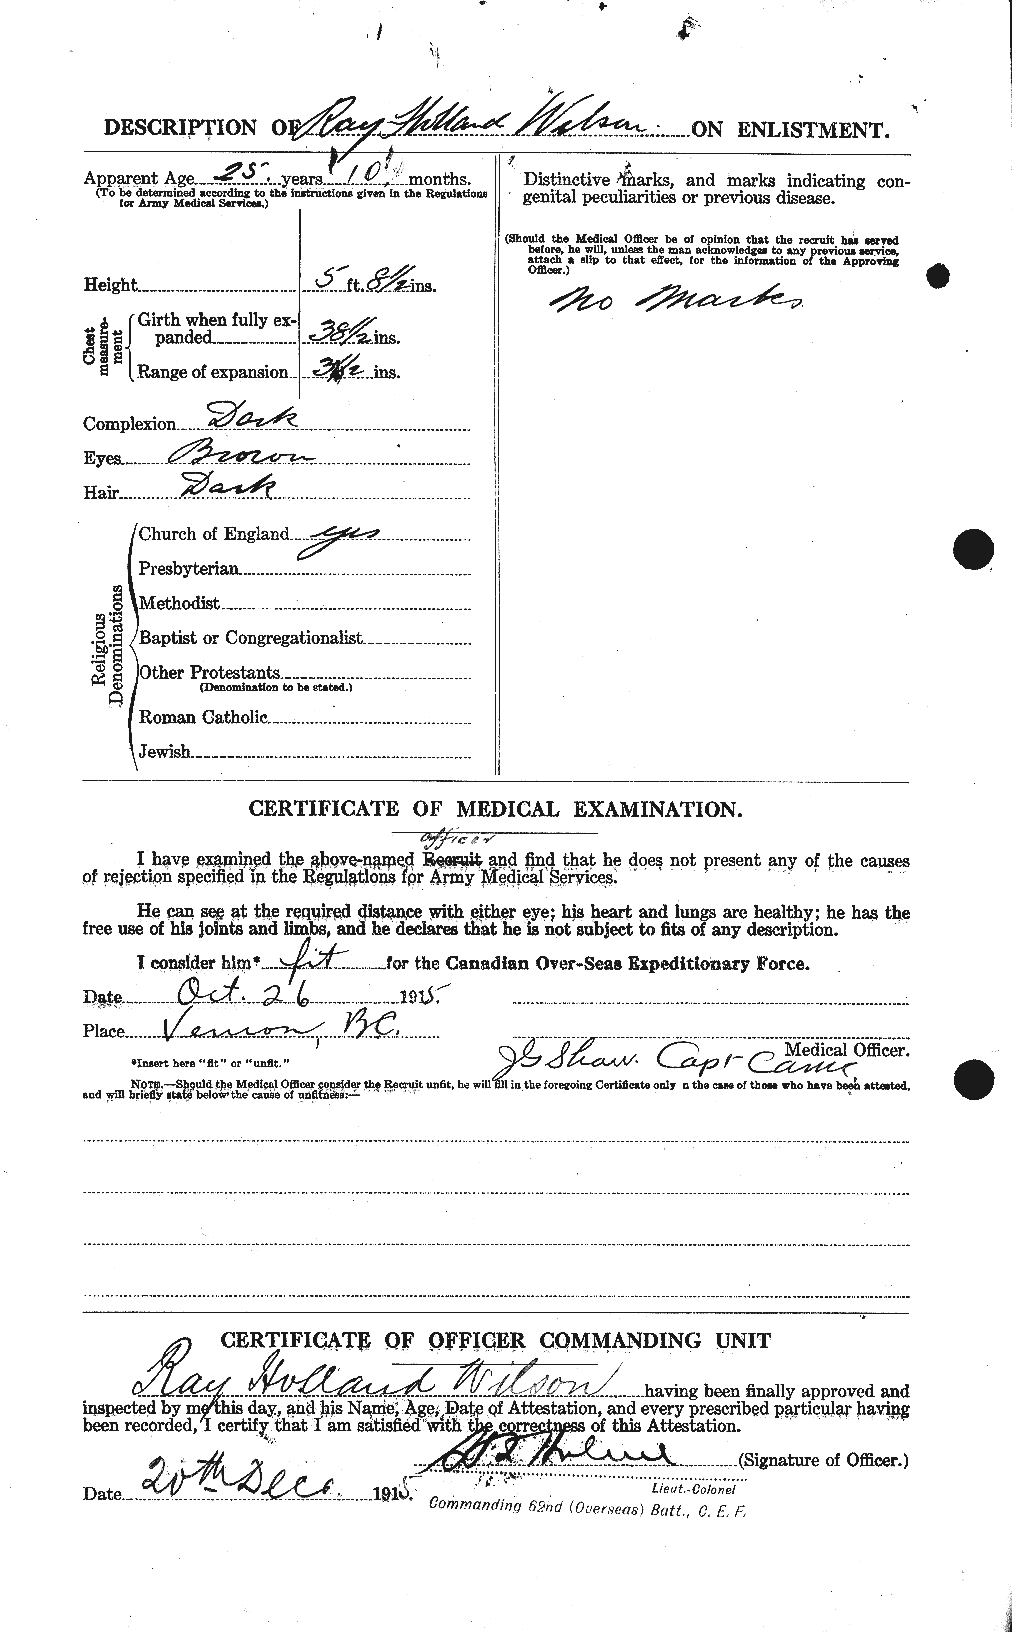 Dossiers du Personnel de la Première Guerre mondiale - CEC 678816b